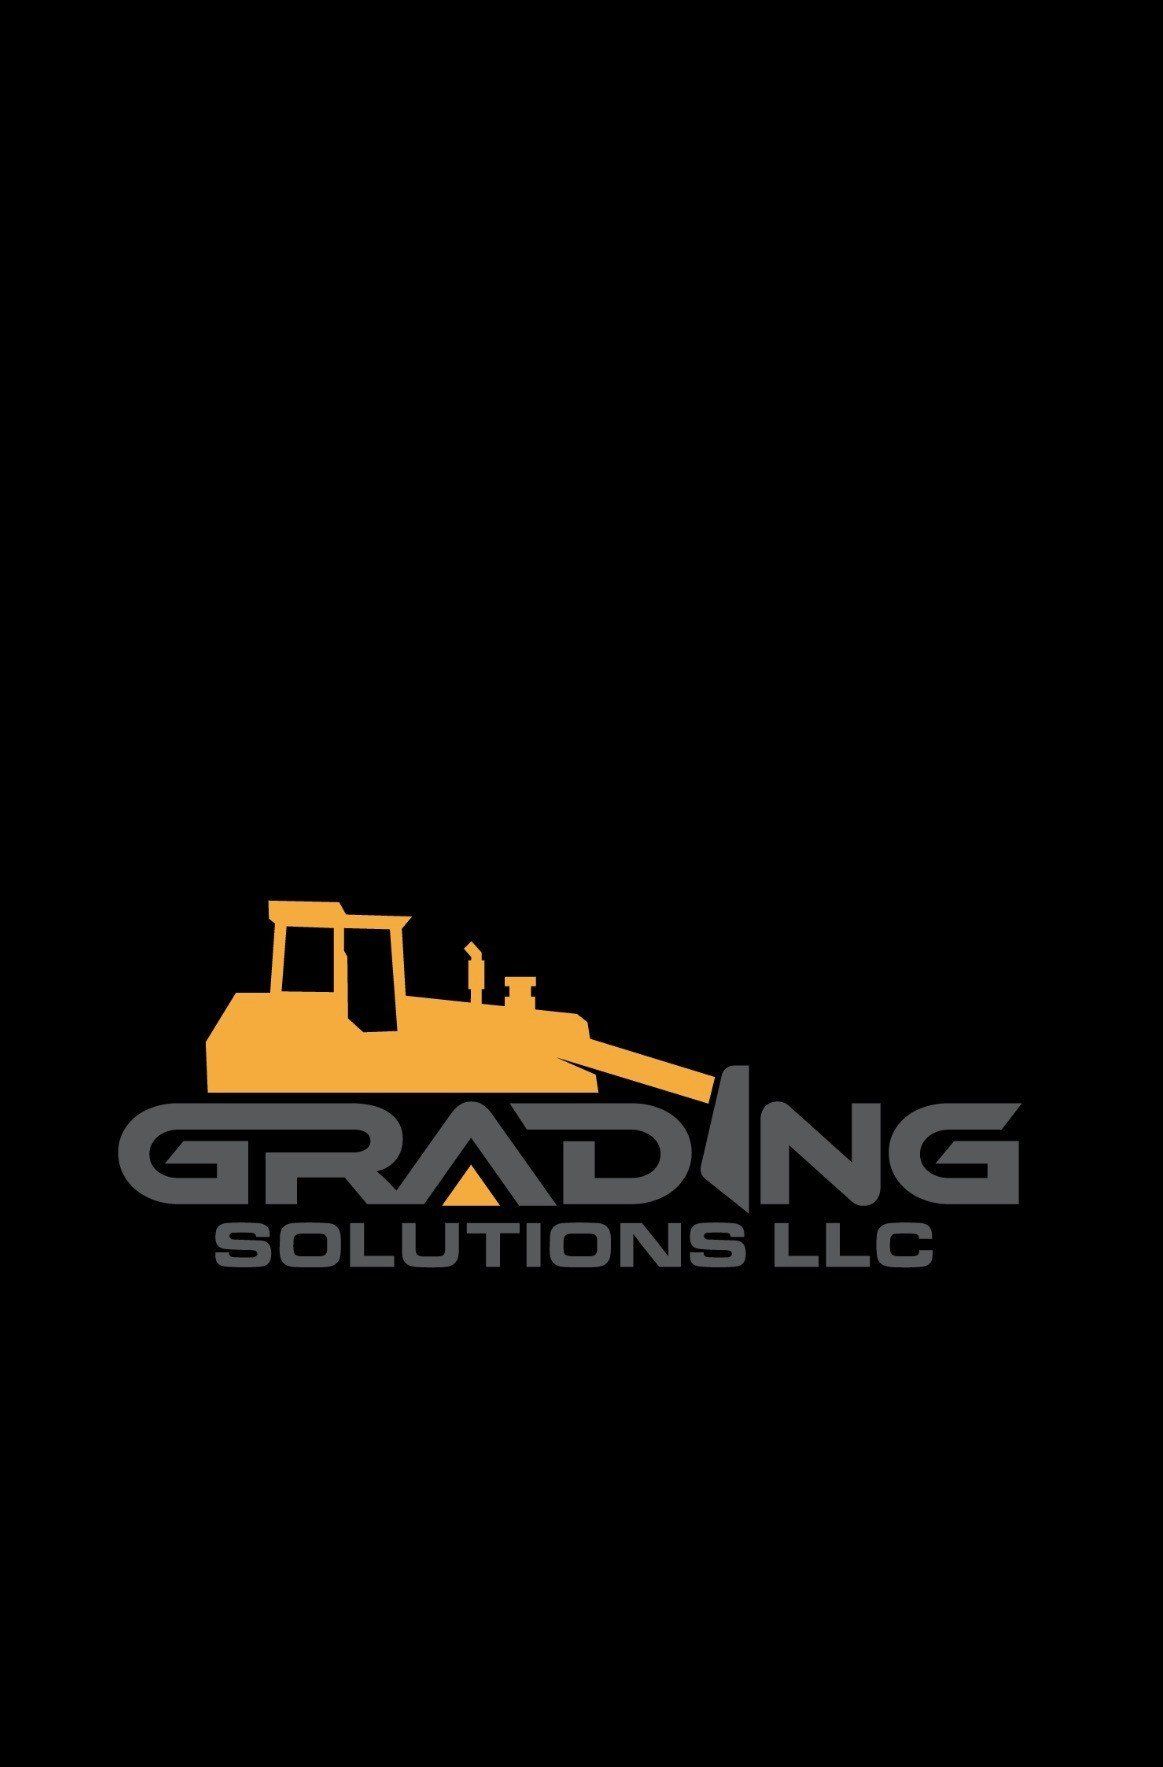 Grading Solutions LLC